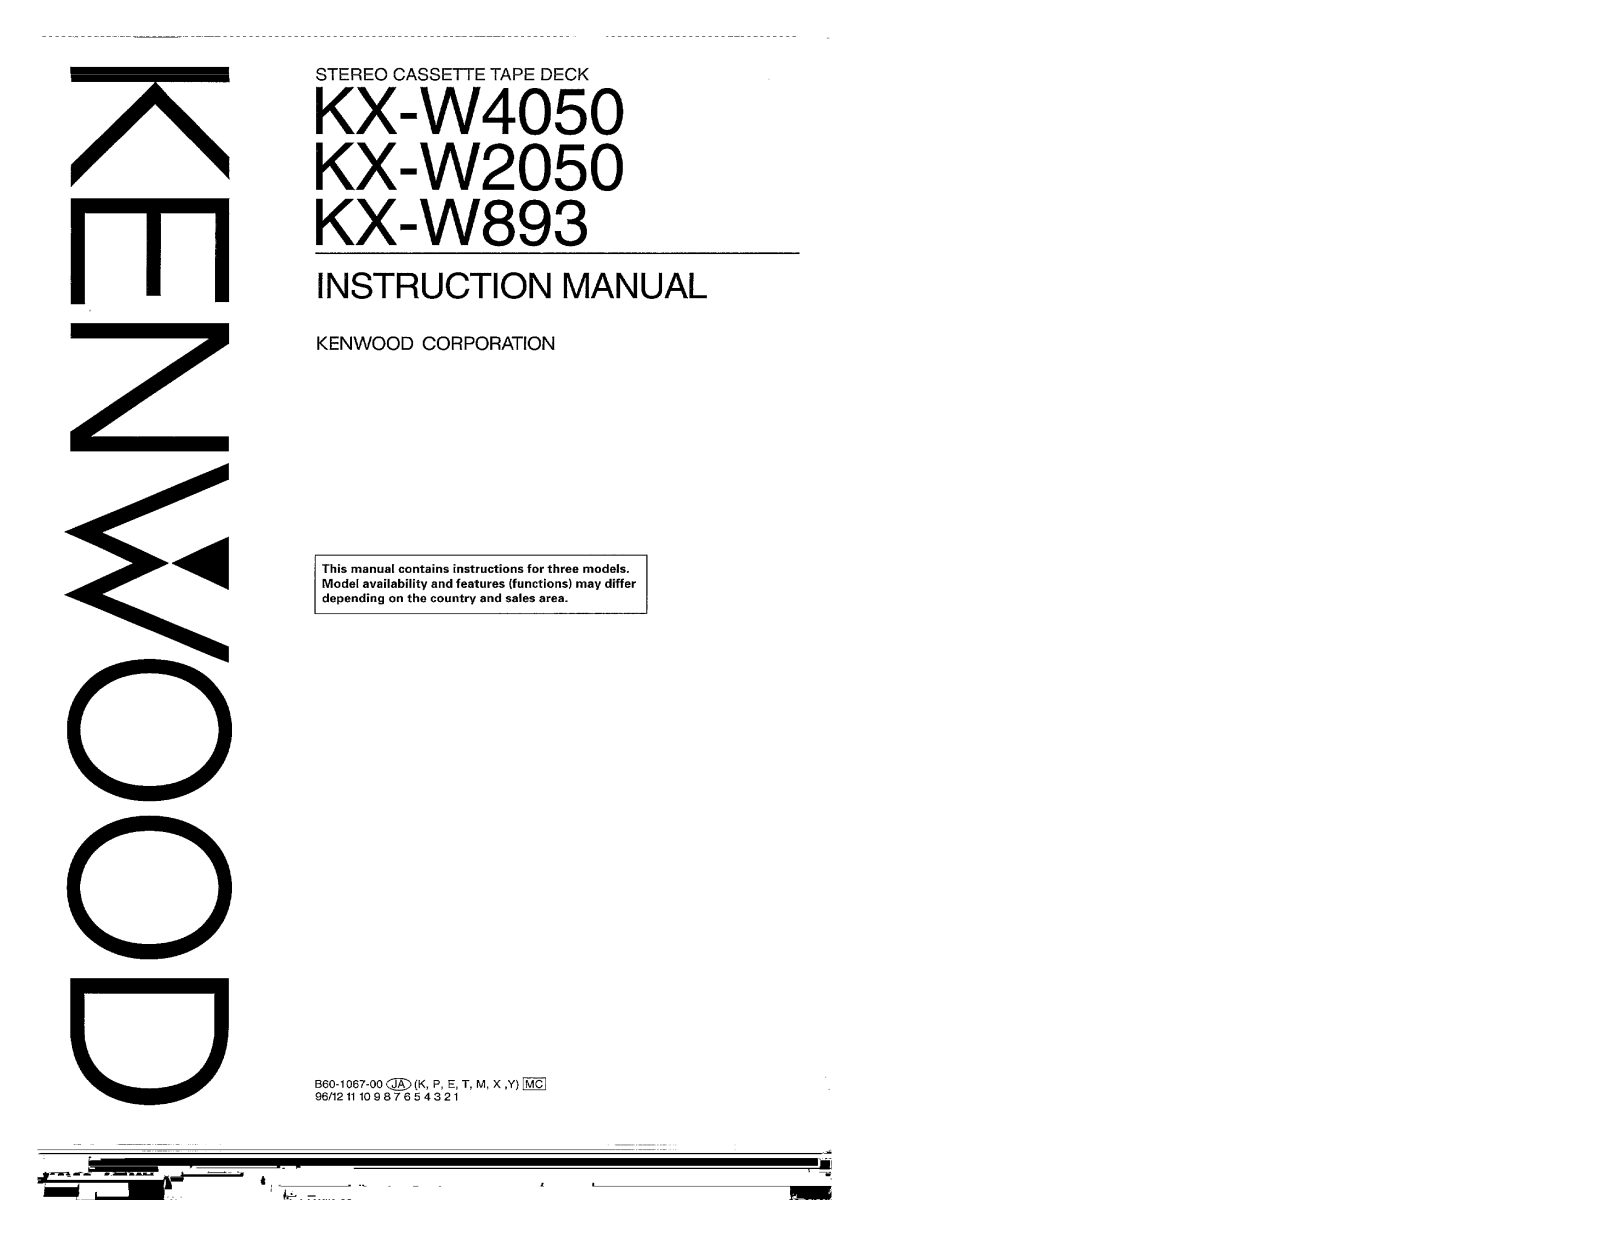 Kenwood KX-W893, KX-W2050 Owner's Manual